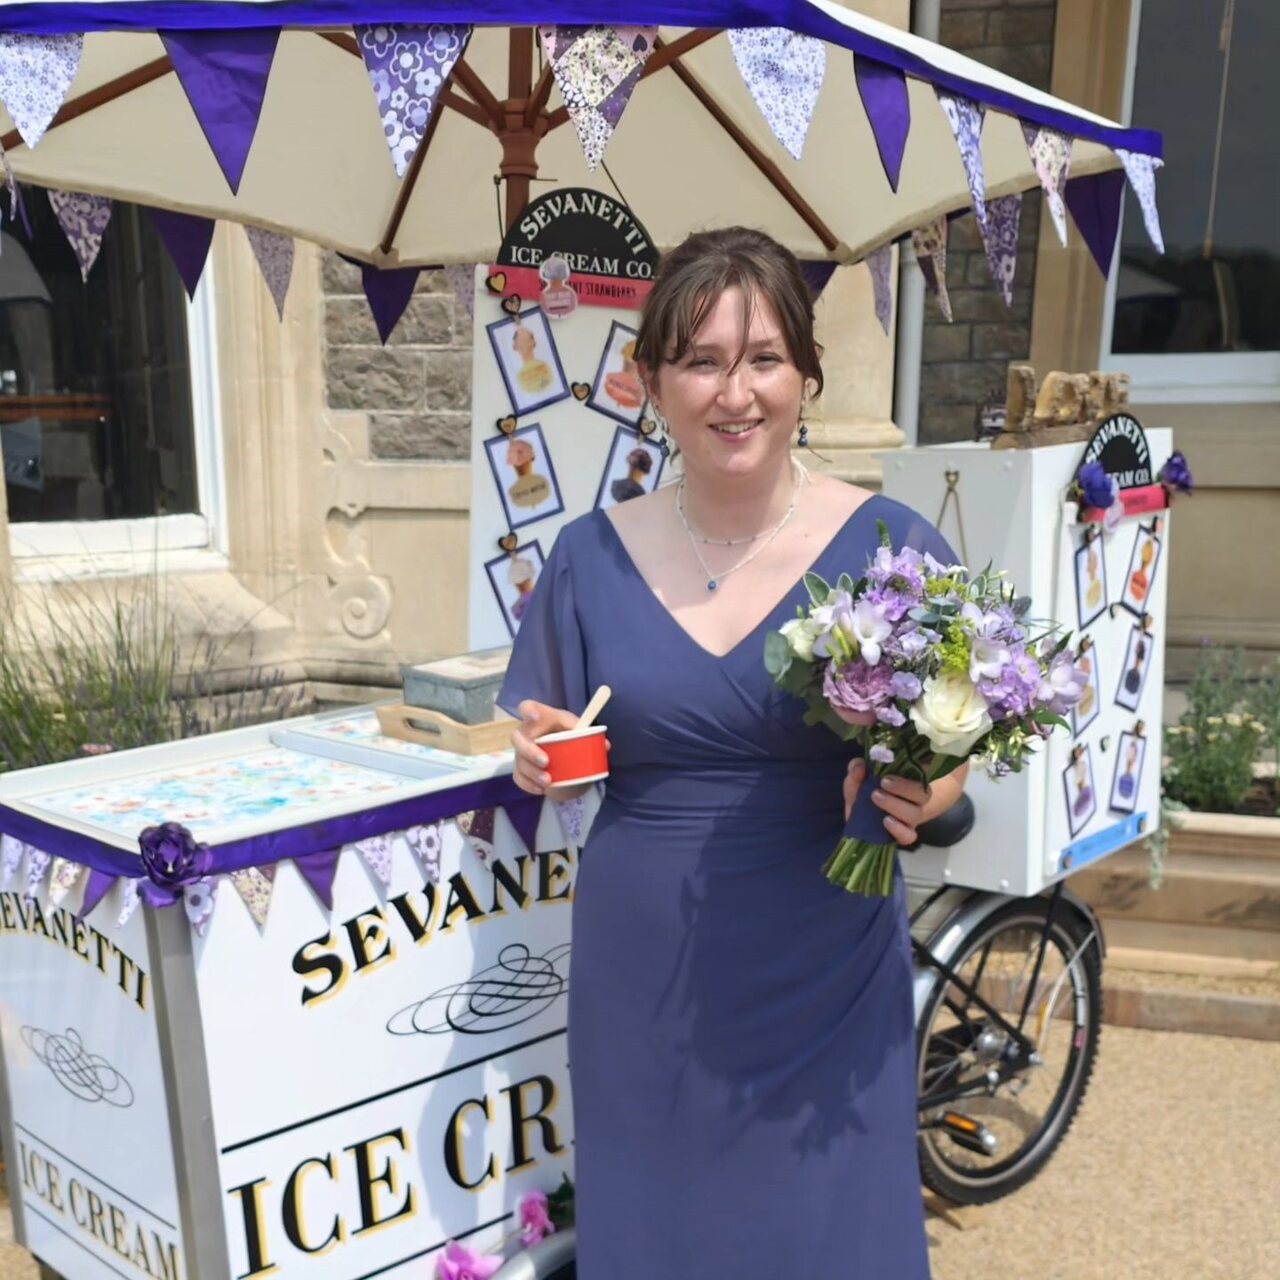 Sevanetti Ice Cream Bikes two girls in Purple dress